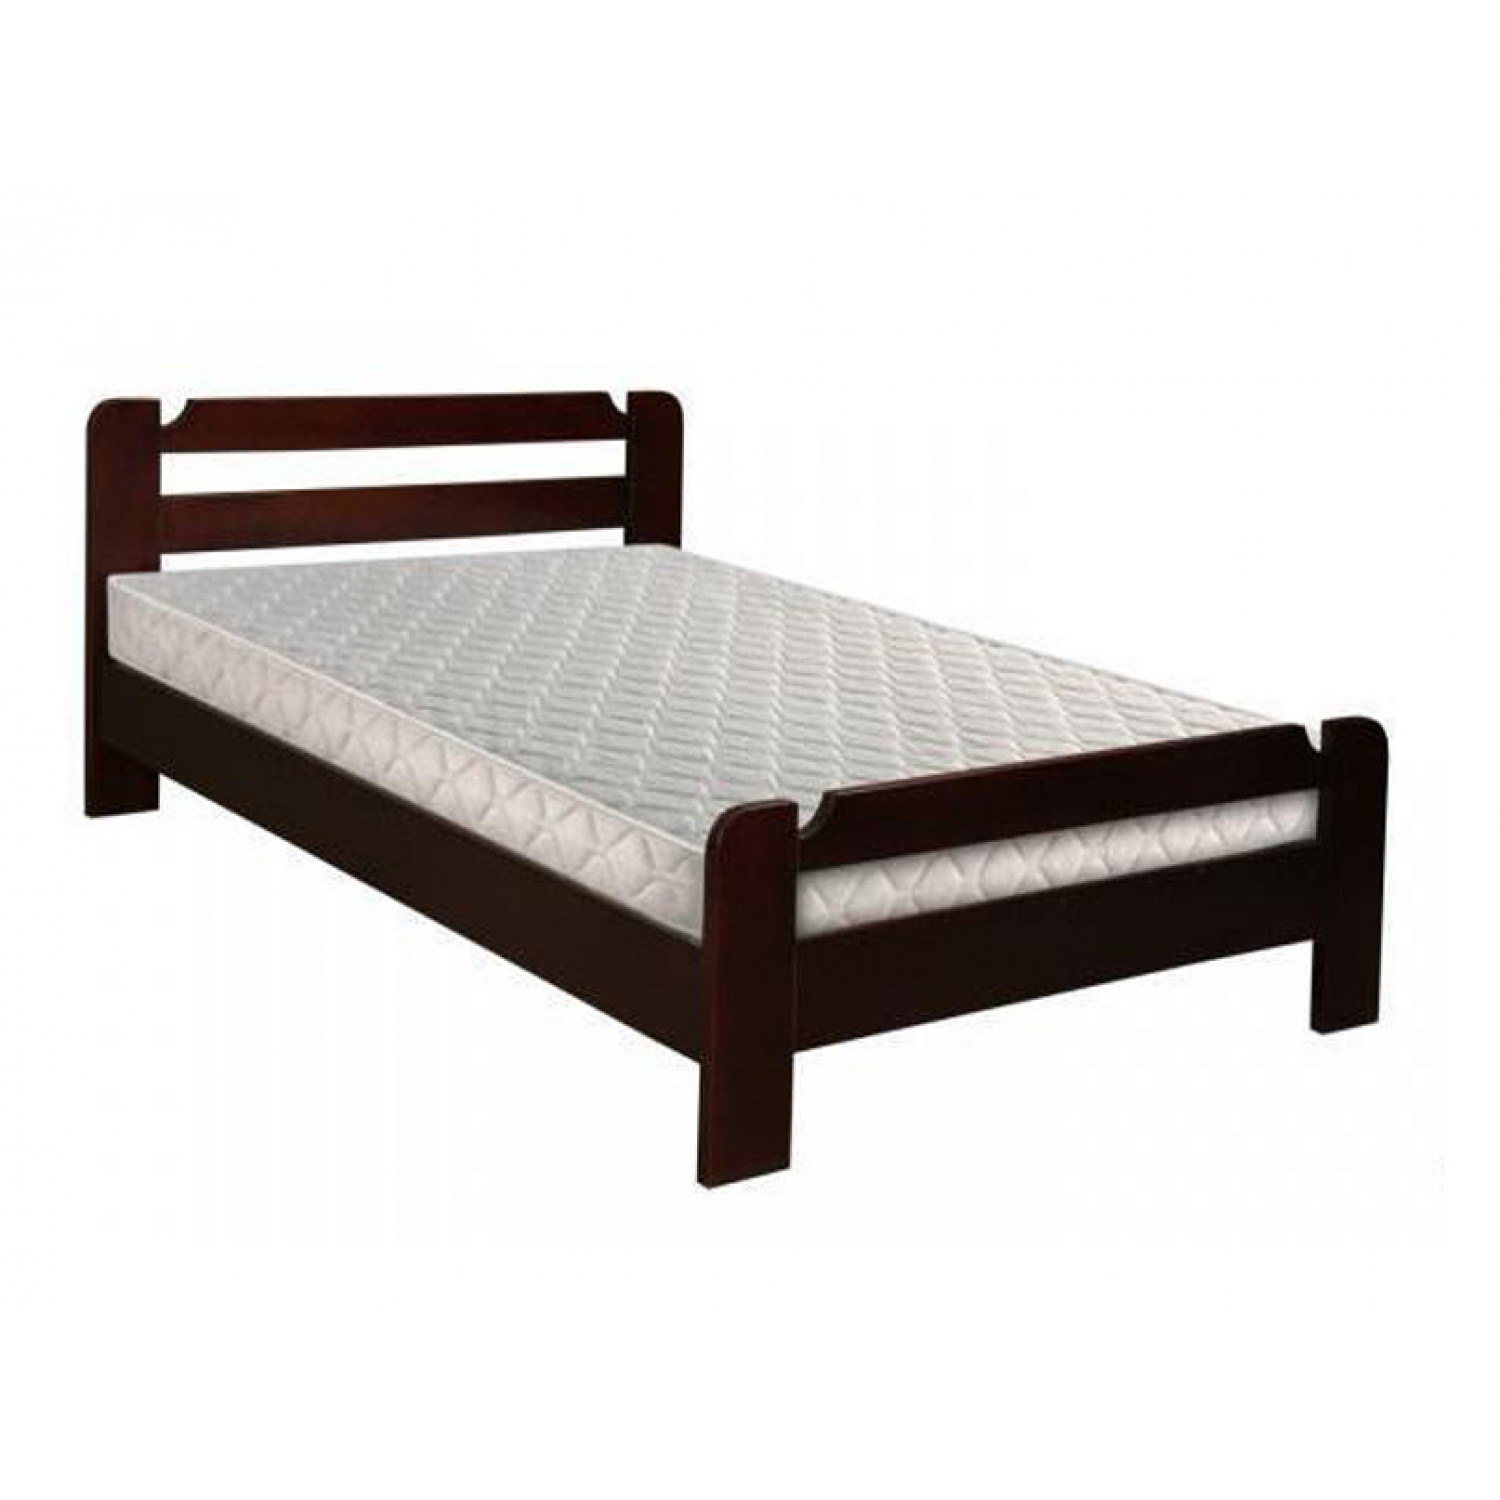 Купить кровать киров недорого. Кровать Анкона из массива дерева. Кровать Анкона из массива односпальная. Кровать Рино Браво мебель. Кровать дуб Анкона.